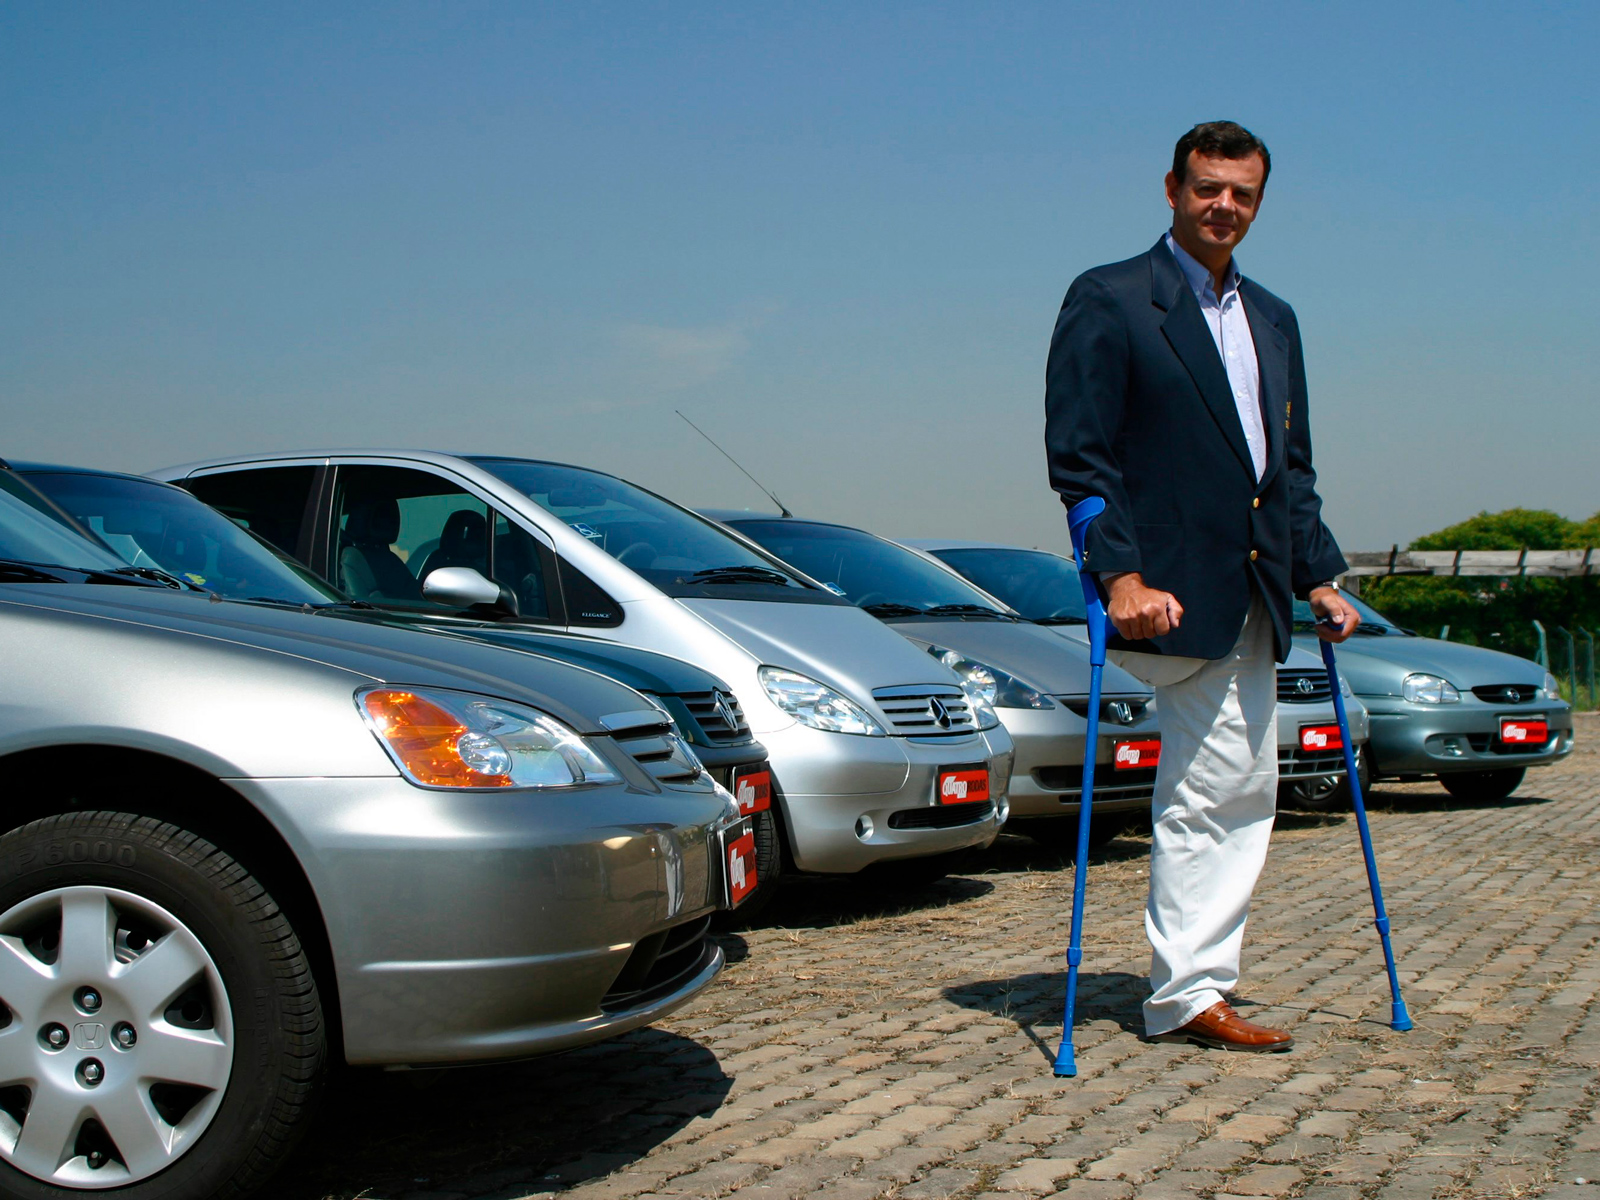 Lars Grael, iatista, testando seis automóveis adaptados para deficientes físicos em 2012